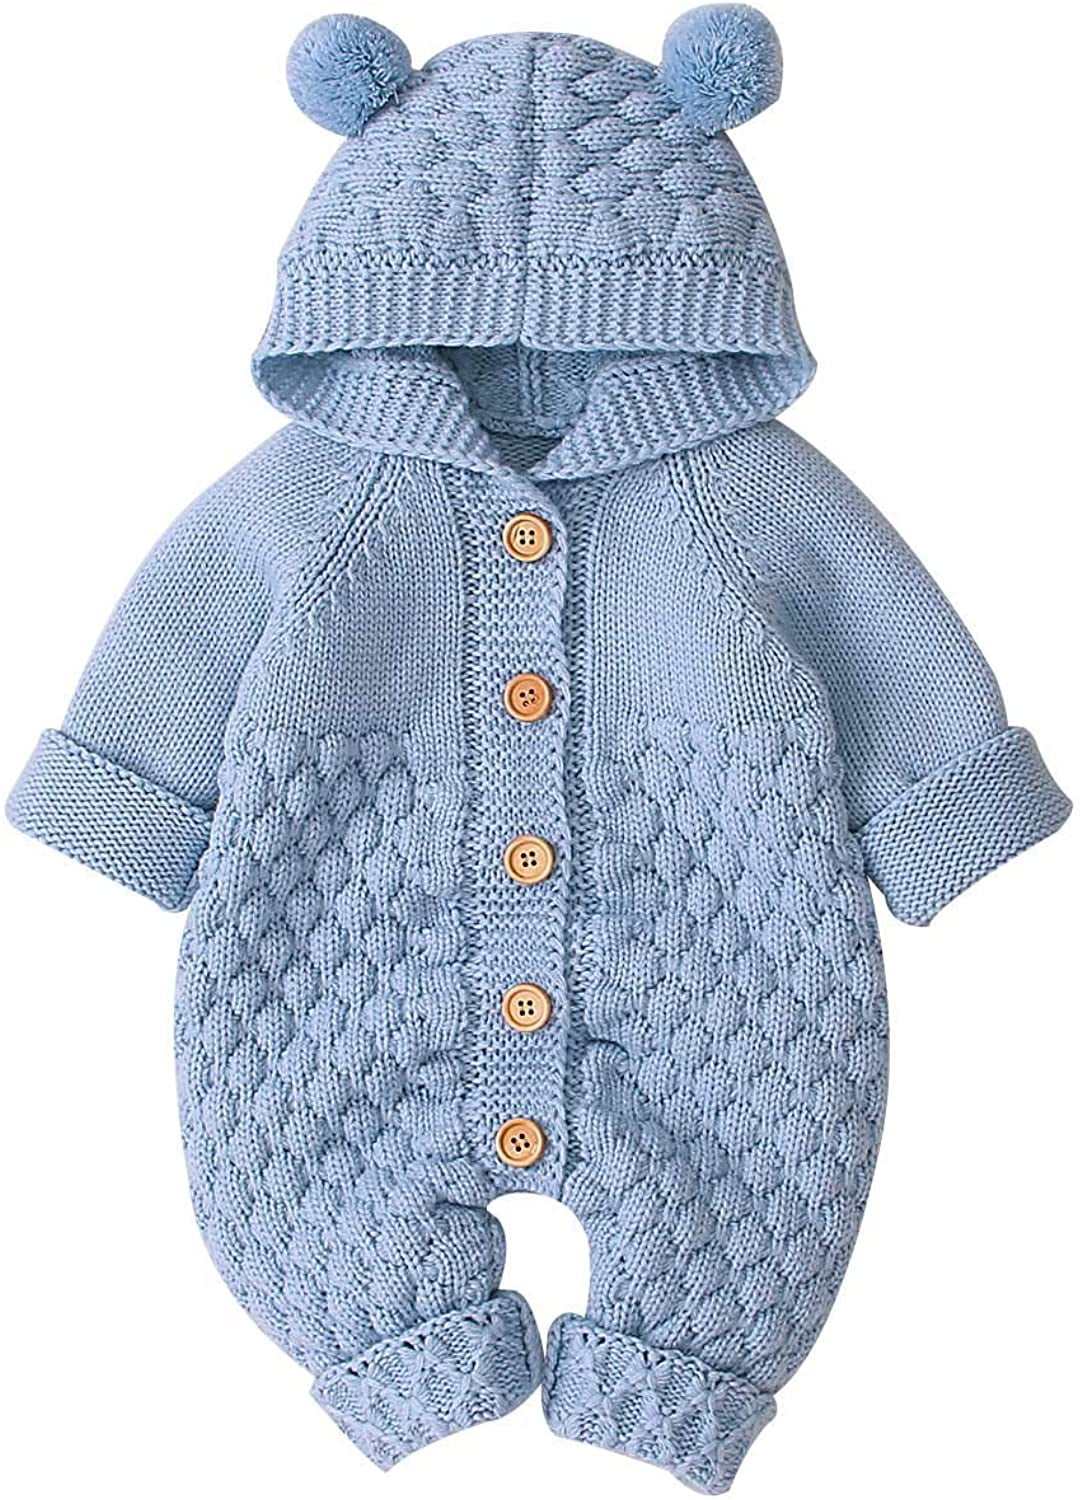 Newborn Baby Girls Boys Warm Winter Knit Outwear Sweater Hooded Romper Jumpsuit 